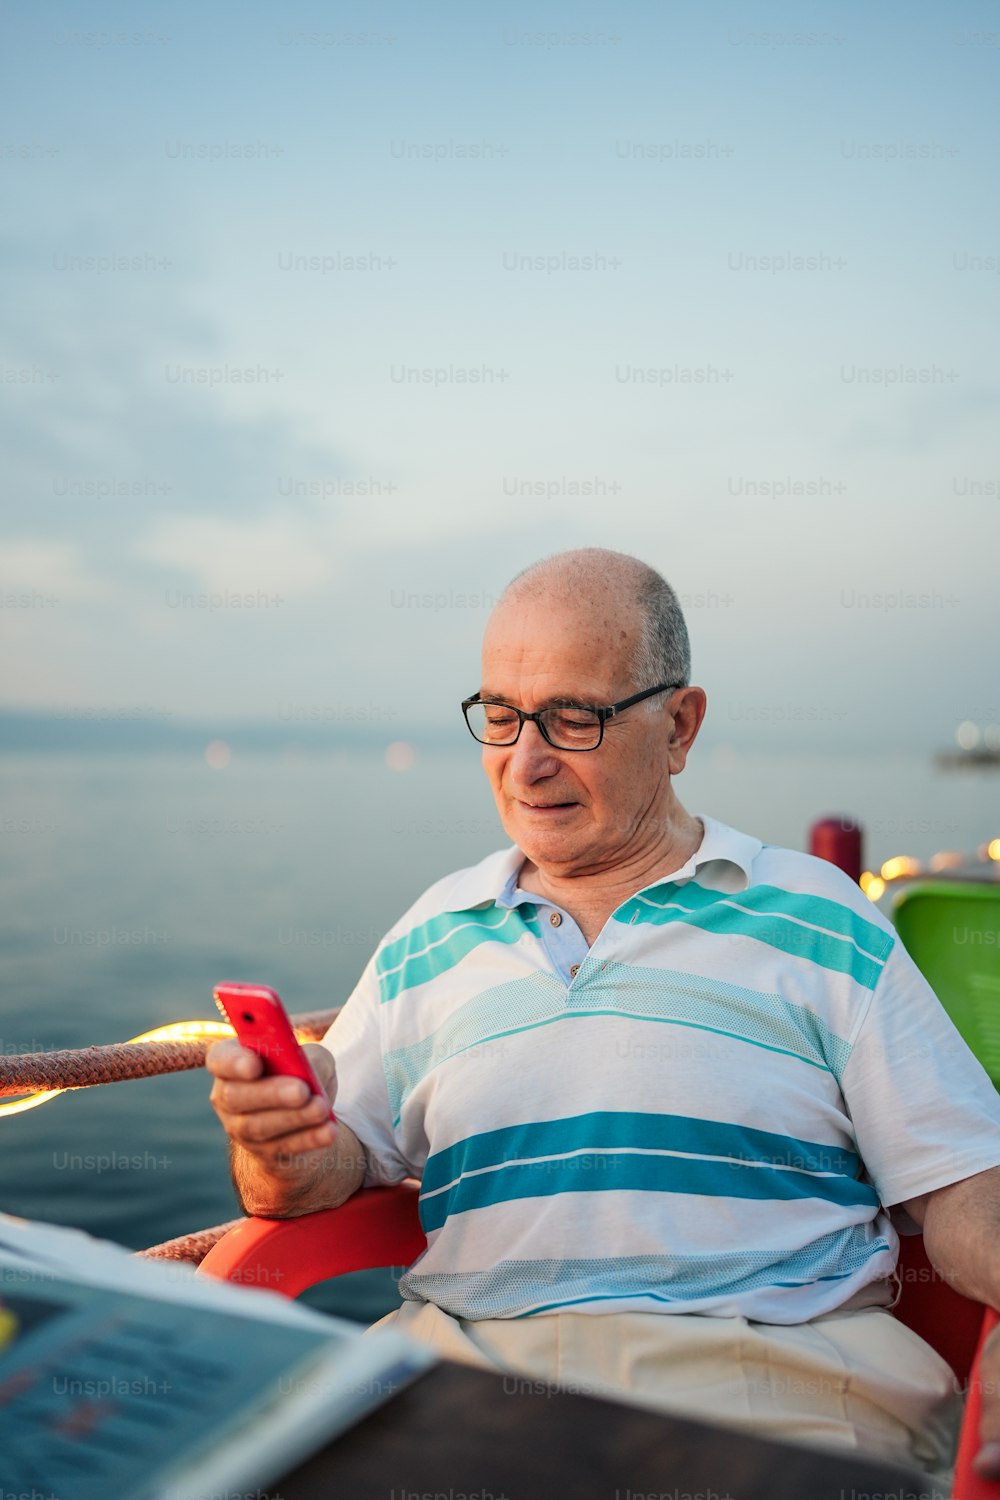 Un uomo seduto su una sedia che guarda un telefono cellulare